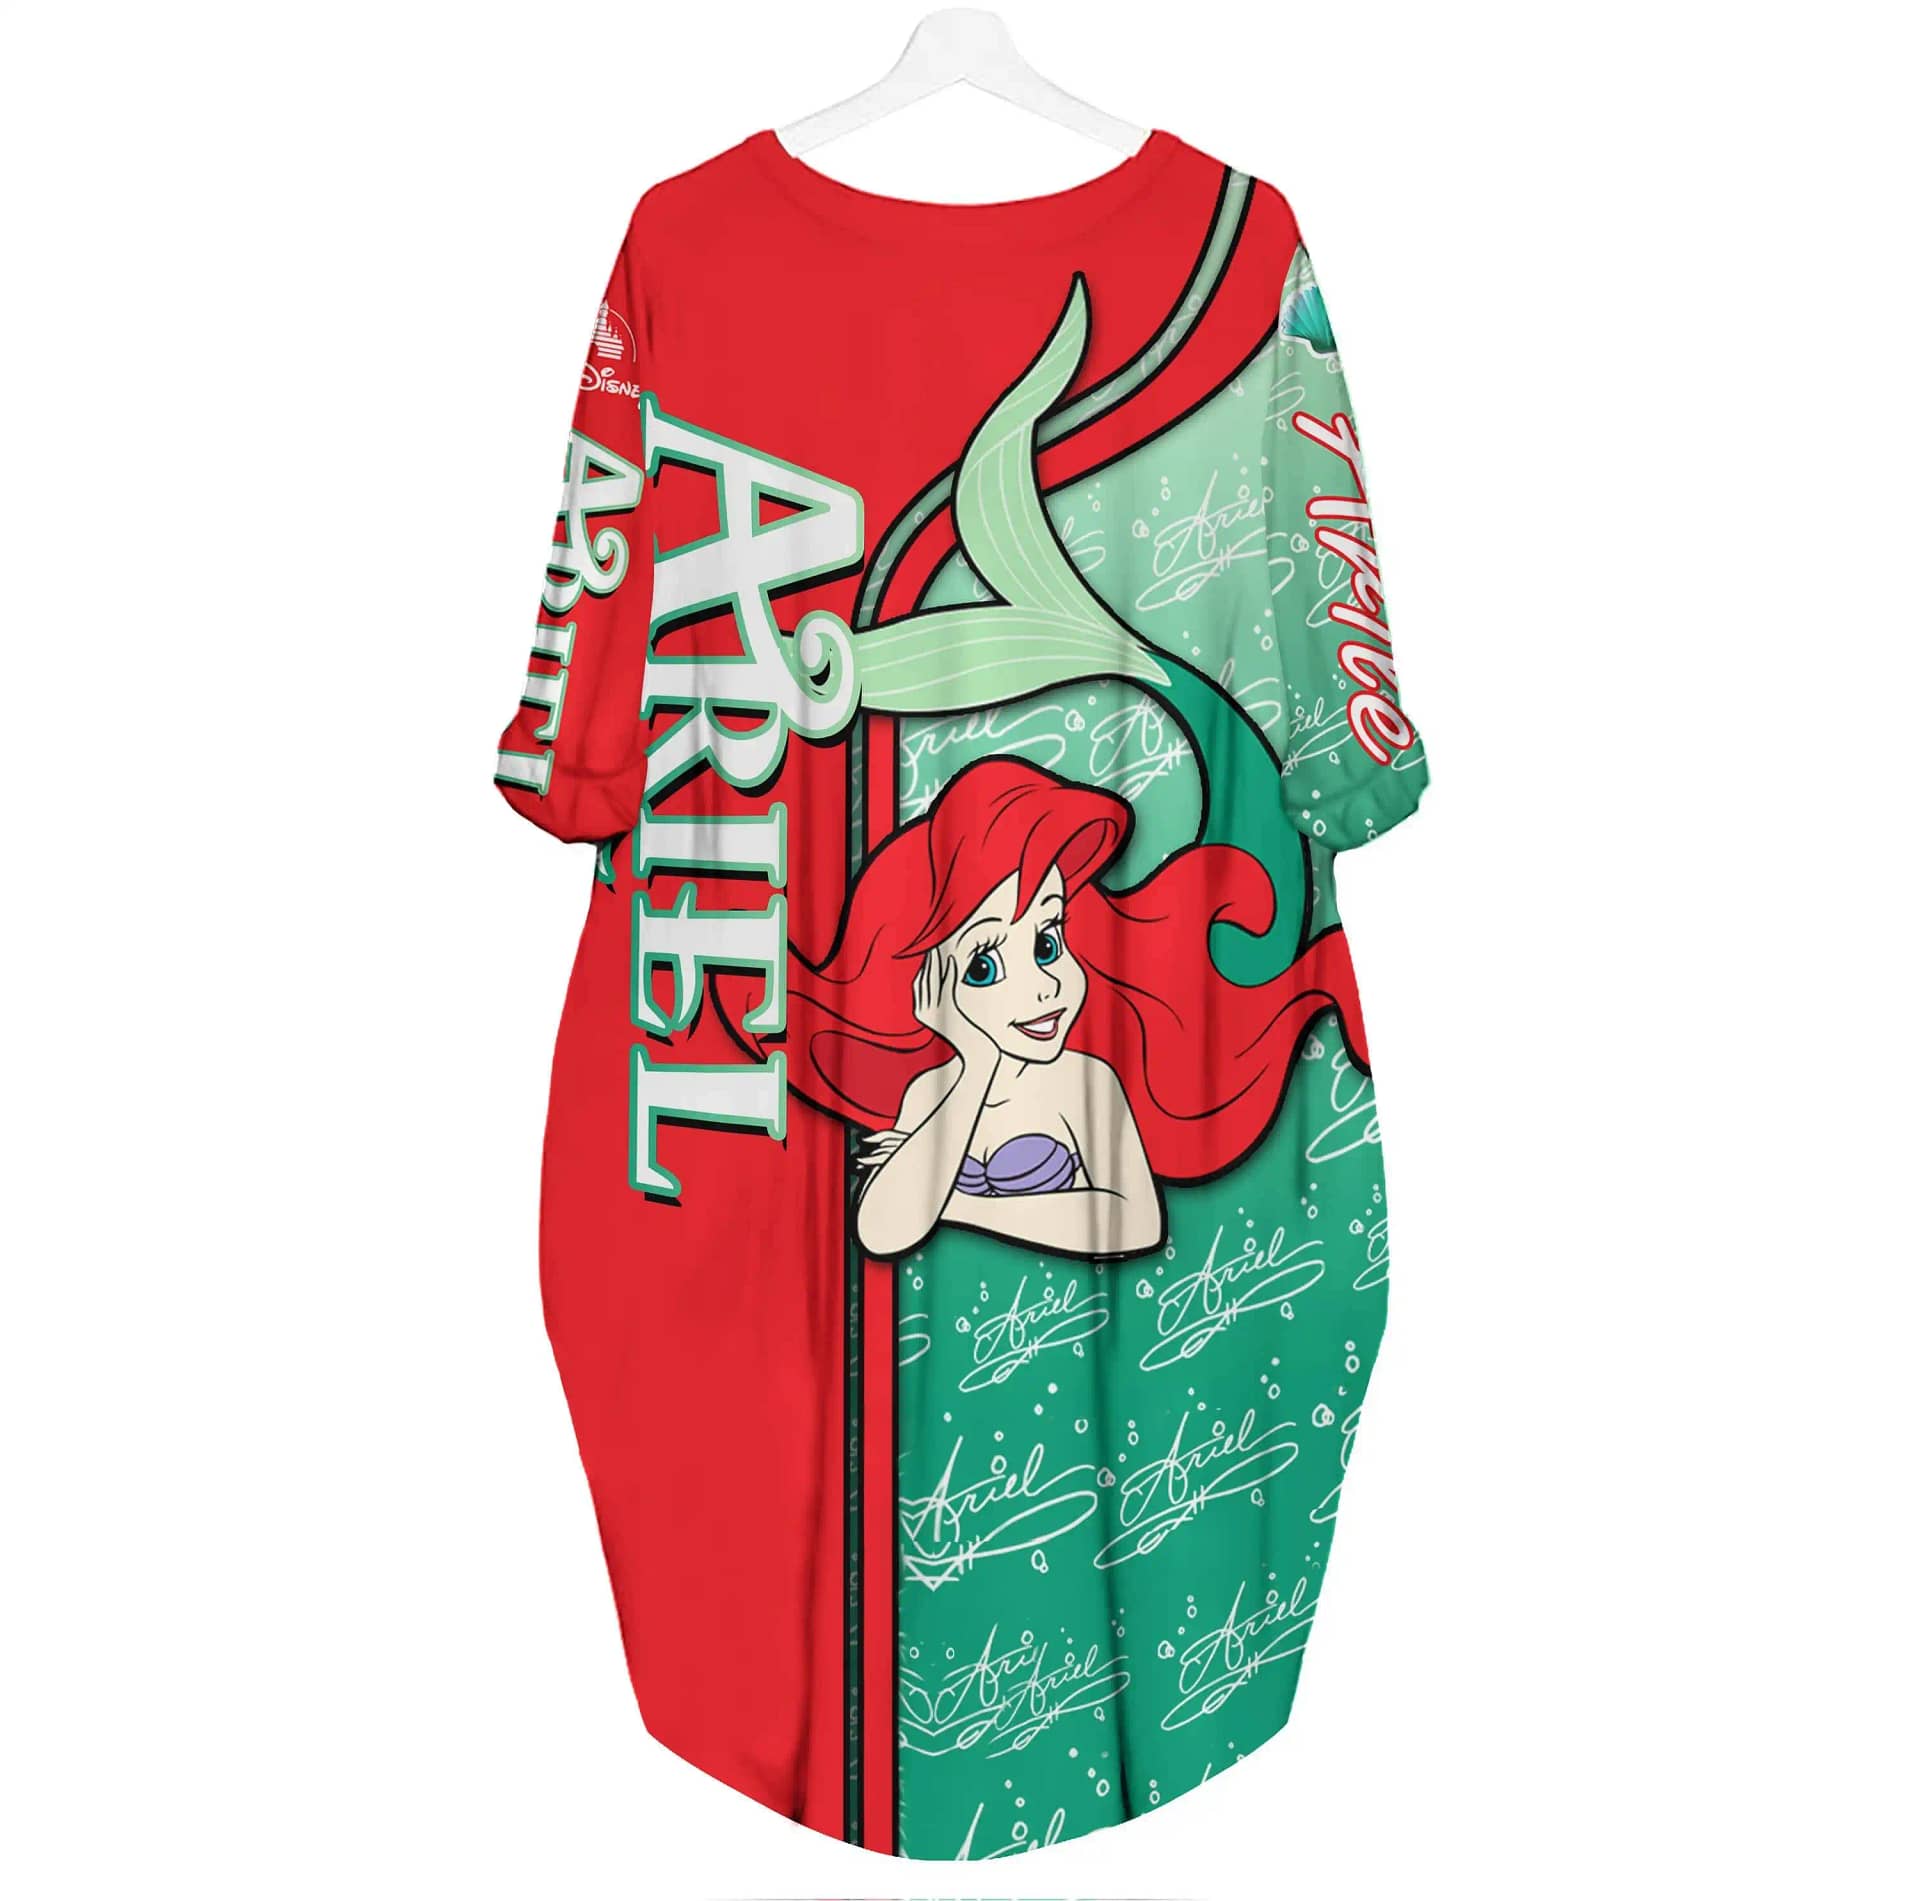 Ariel Princess Little Mermaid Disney Cartoon Summer Vacation Outfit Women Girls Batwing Pocket Dress